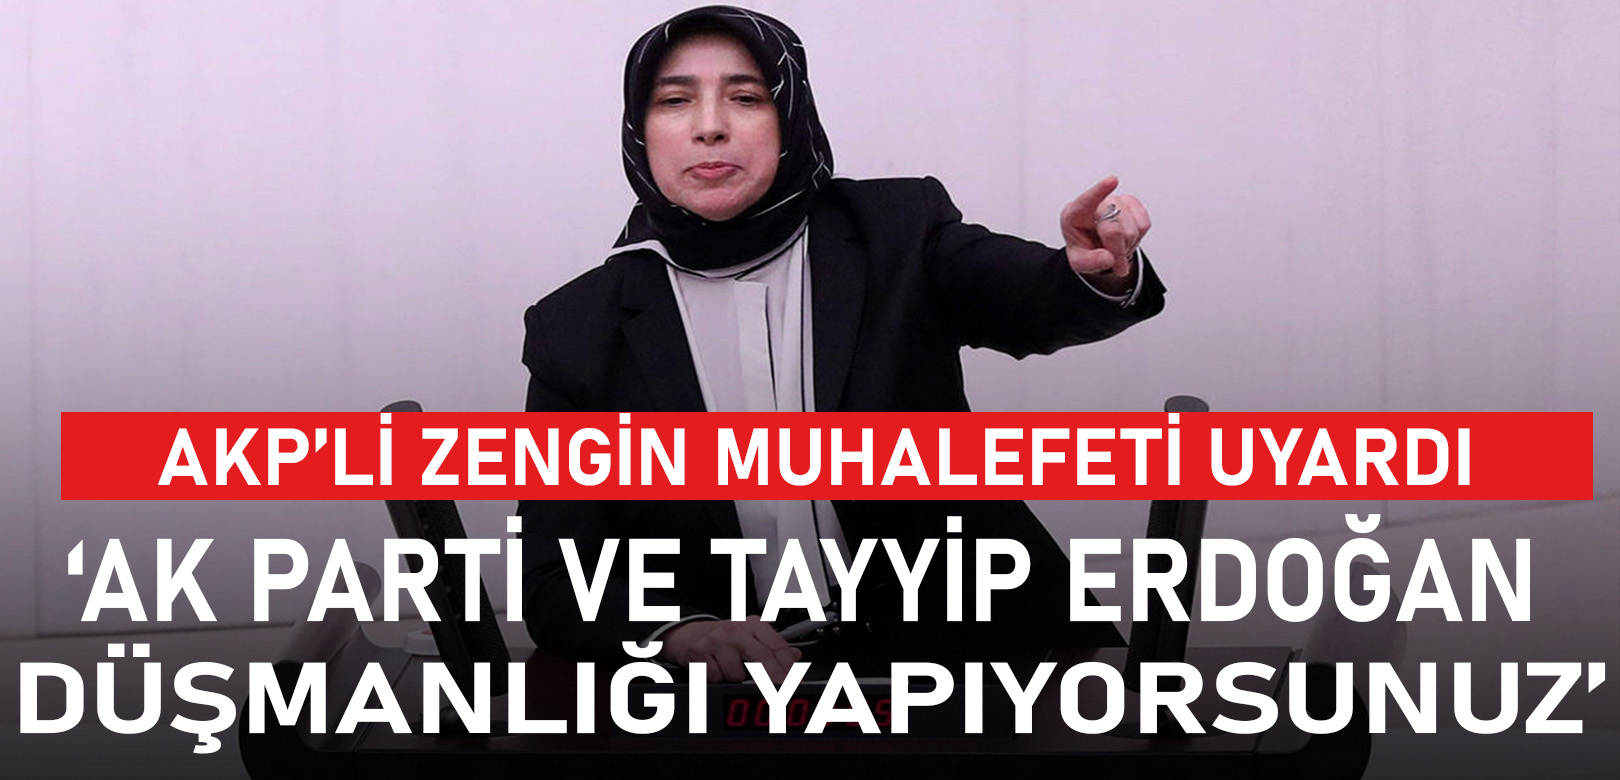 AKP’li Zengin, İsrail’le ticareti gündeme getiren muhalefeti uyardı